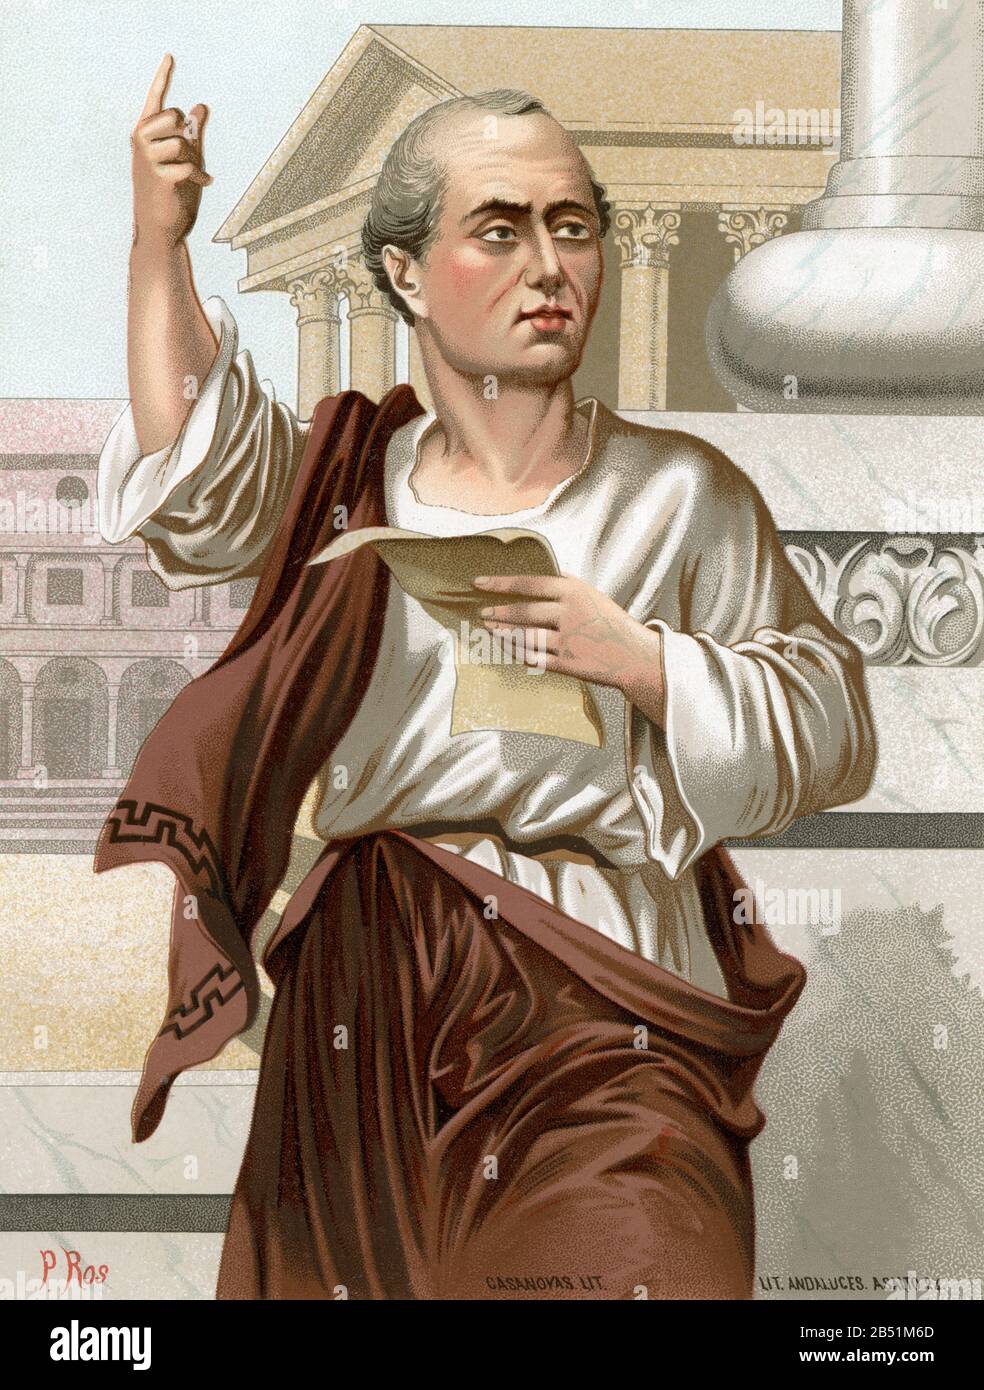 Altes Farblithografie-Porträt. Mark Tullius Cicero war Jurist, Politiker, Philosoph, Schriftsteller und römischer Redner. Gilt als eine der größten rh Stockfoto